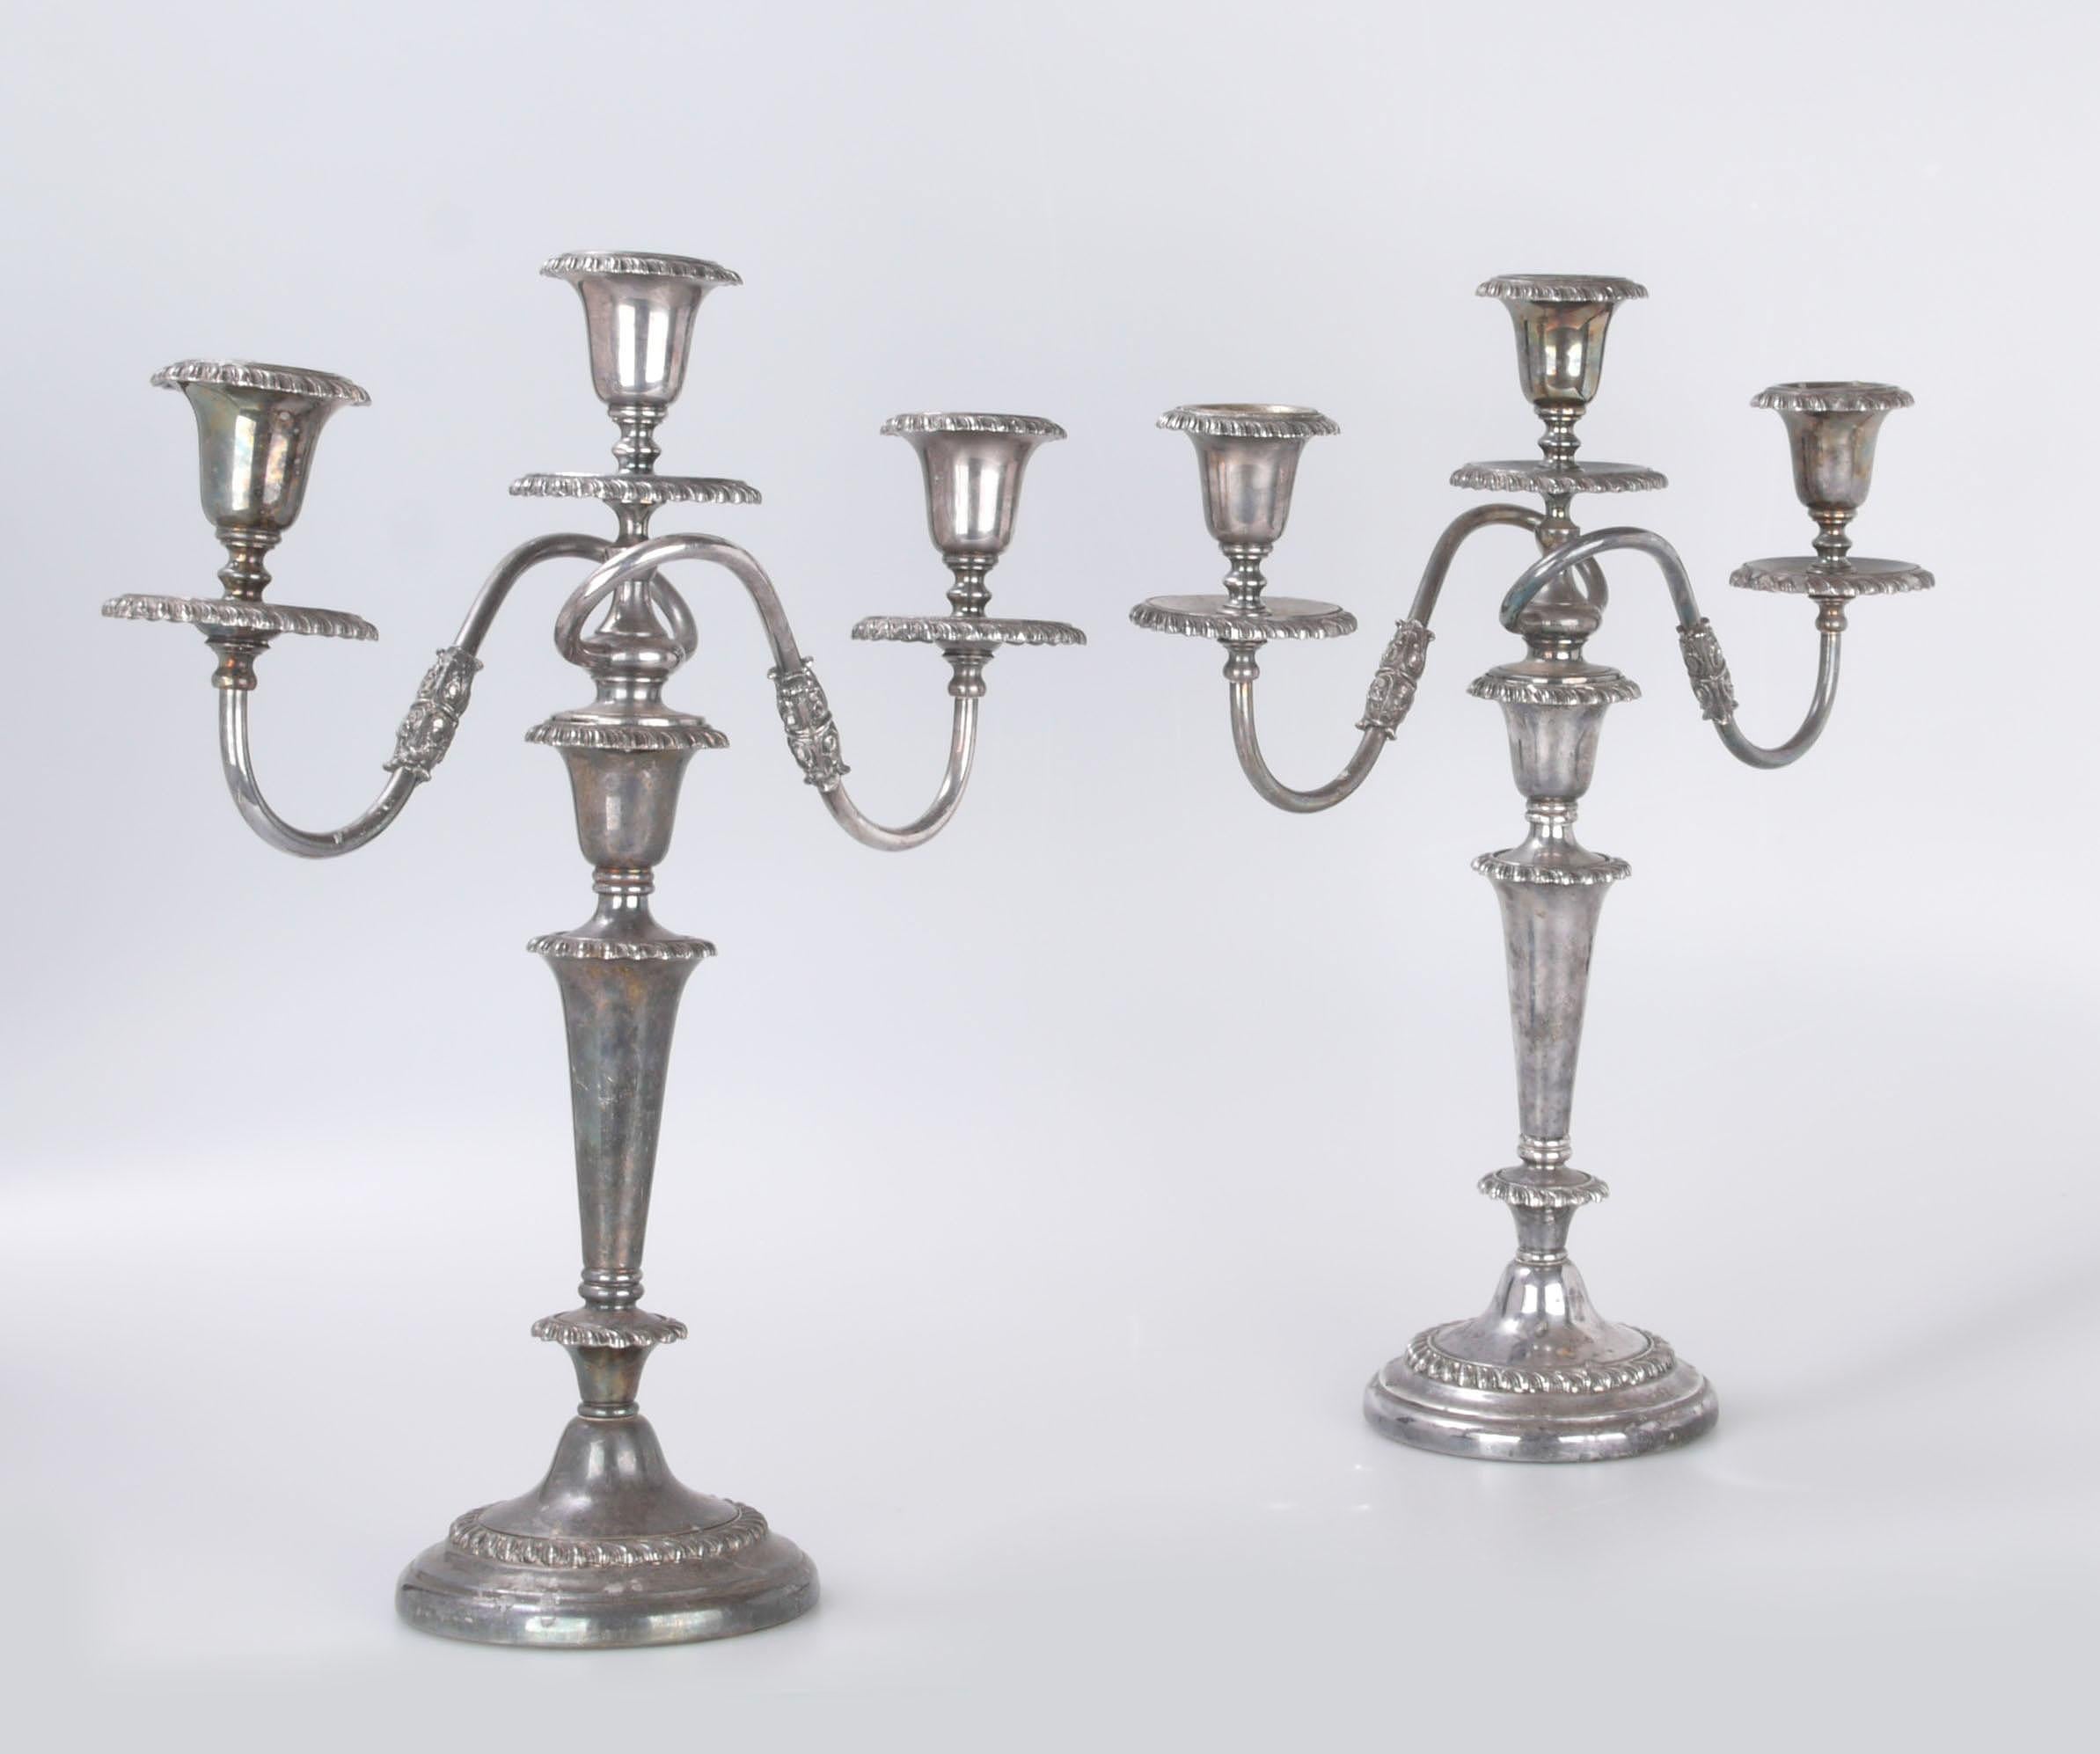 Ein Paar viktorianische Friedman versilbert dreiarmigen konvertierbaren Kerzenhalter oder Kandelaber.
Jedes Teil kann entweder drei Lichter oder nur ein Licht aufnehmen (wenn das oberste Teil entfernt wird, wie im Bild gezeigt).
Friedman-Marke auf